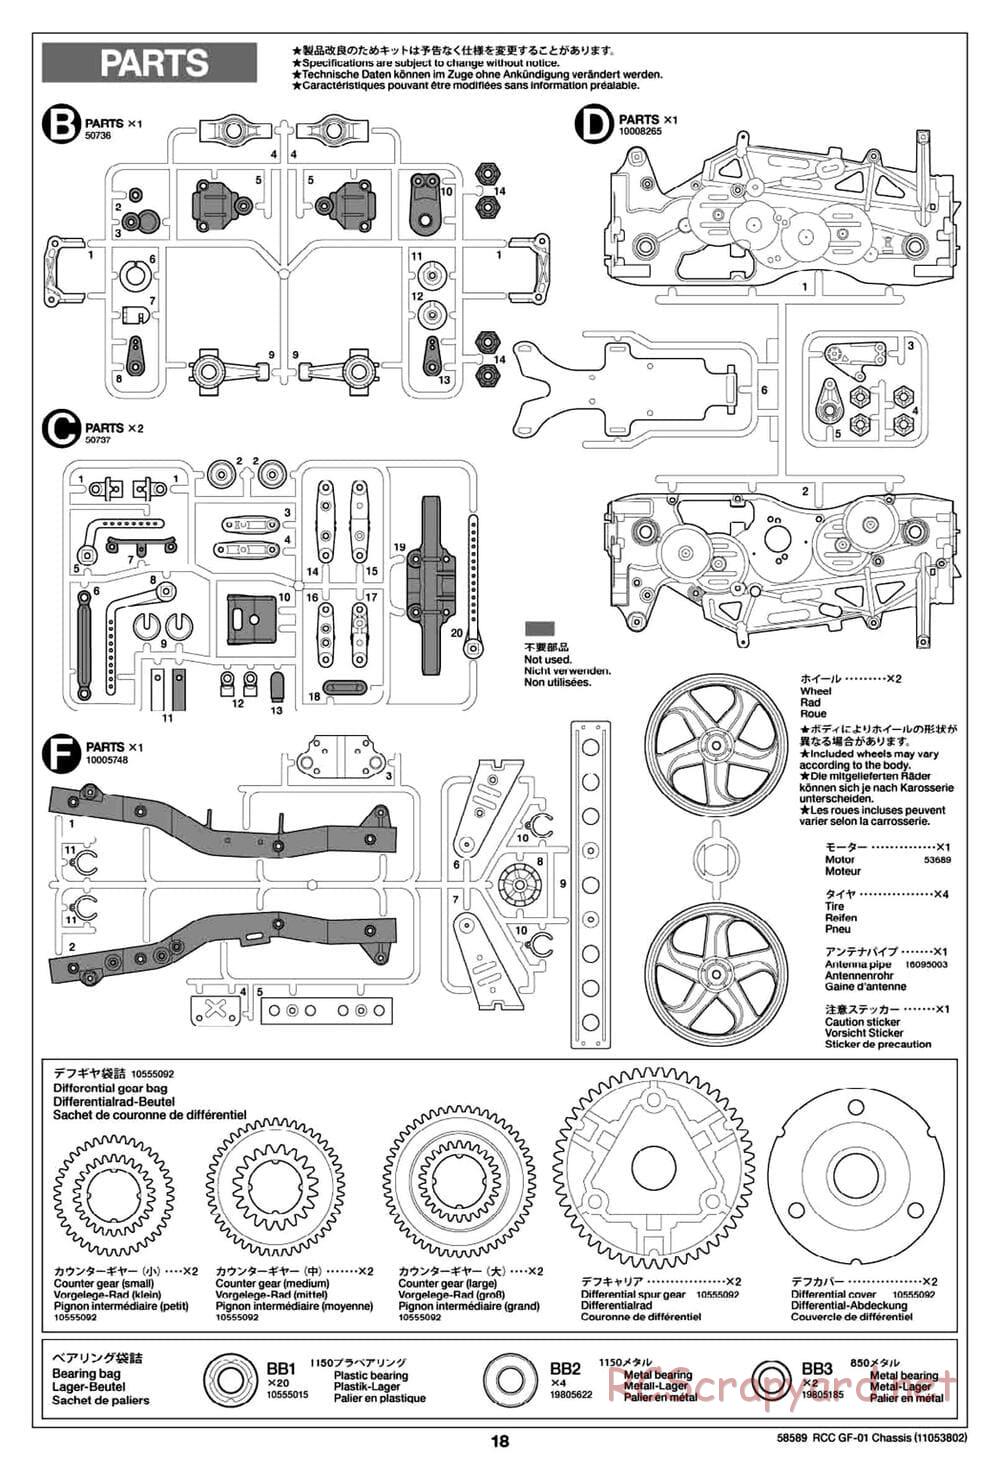 Tamiya - GF-01 Chassis - Manual - Page 18